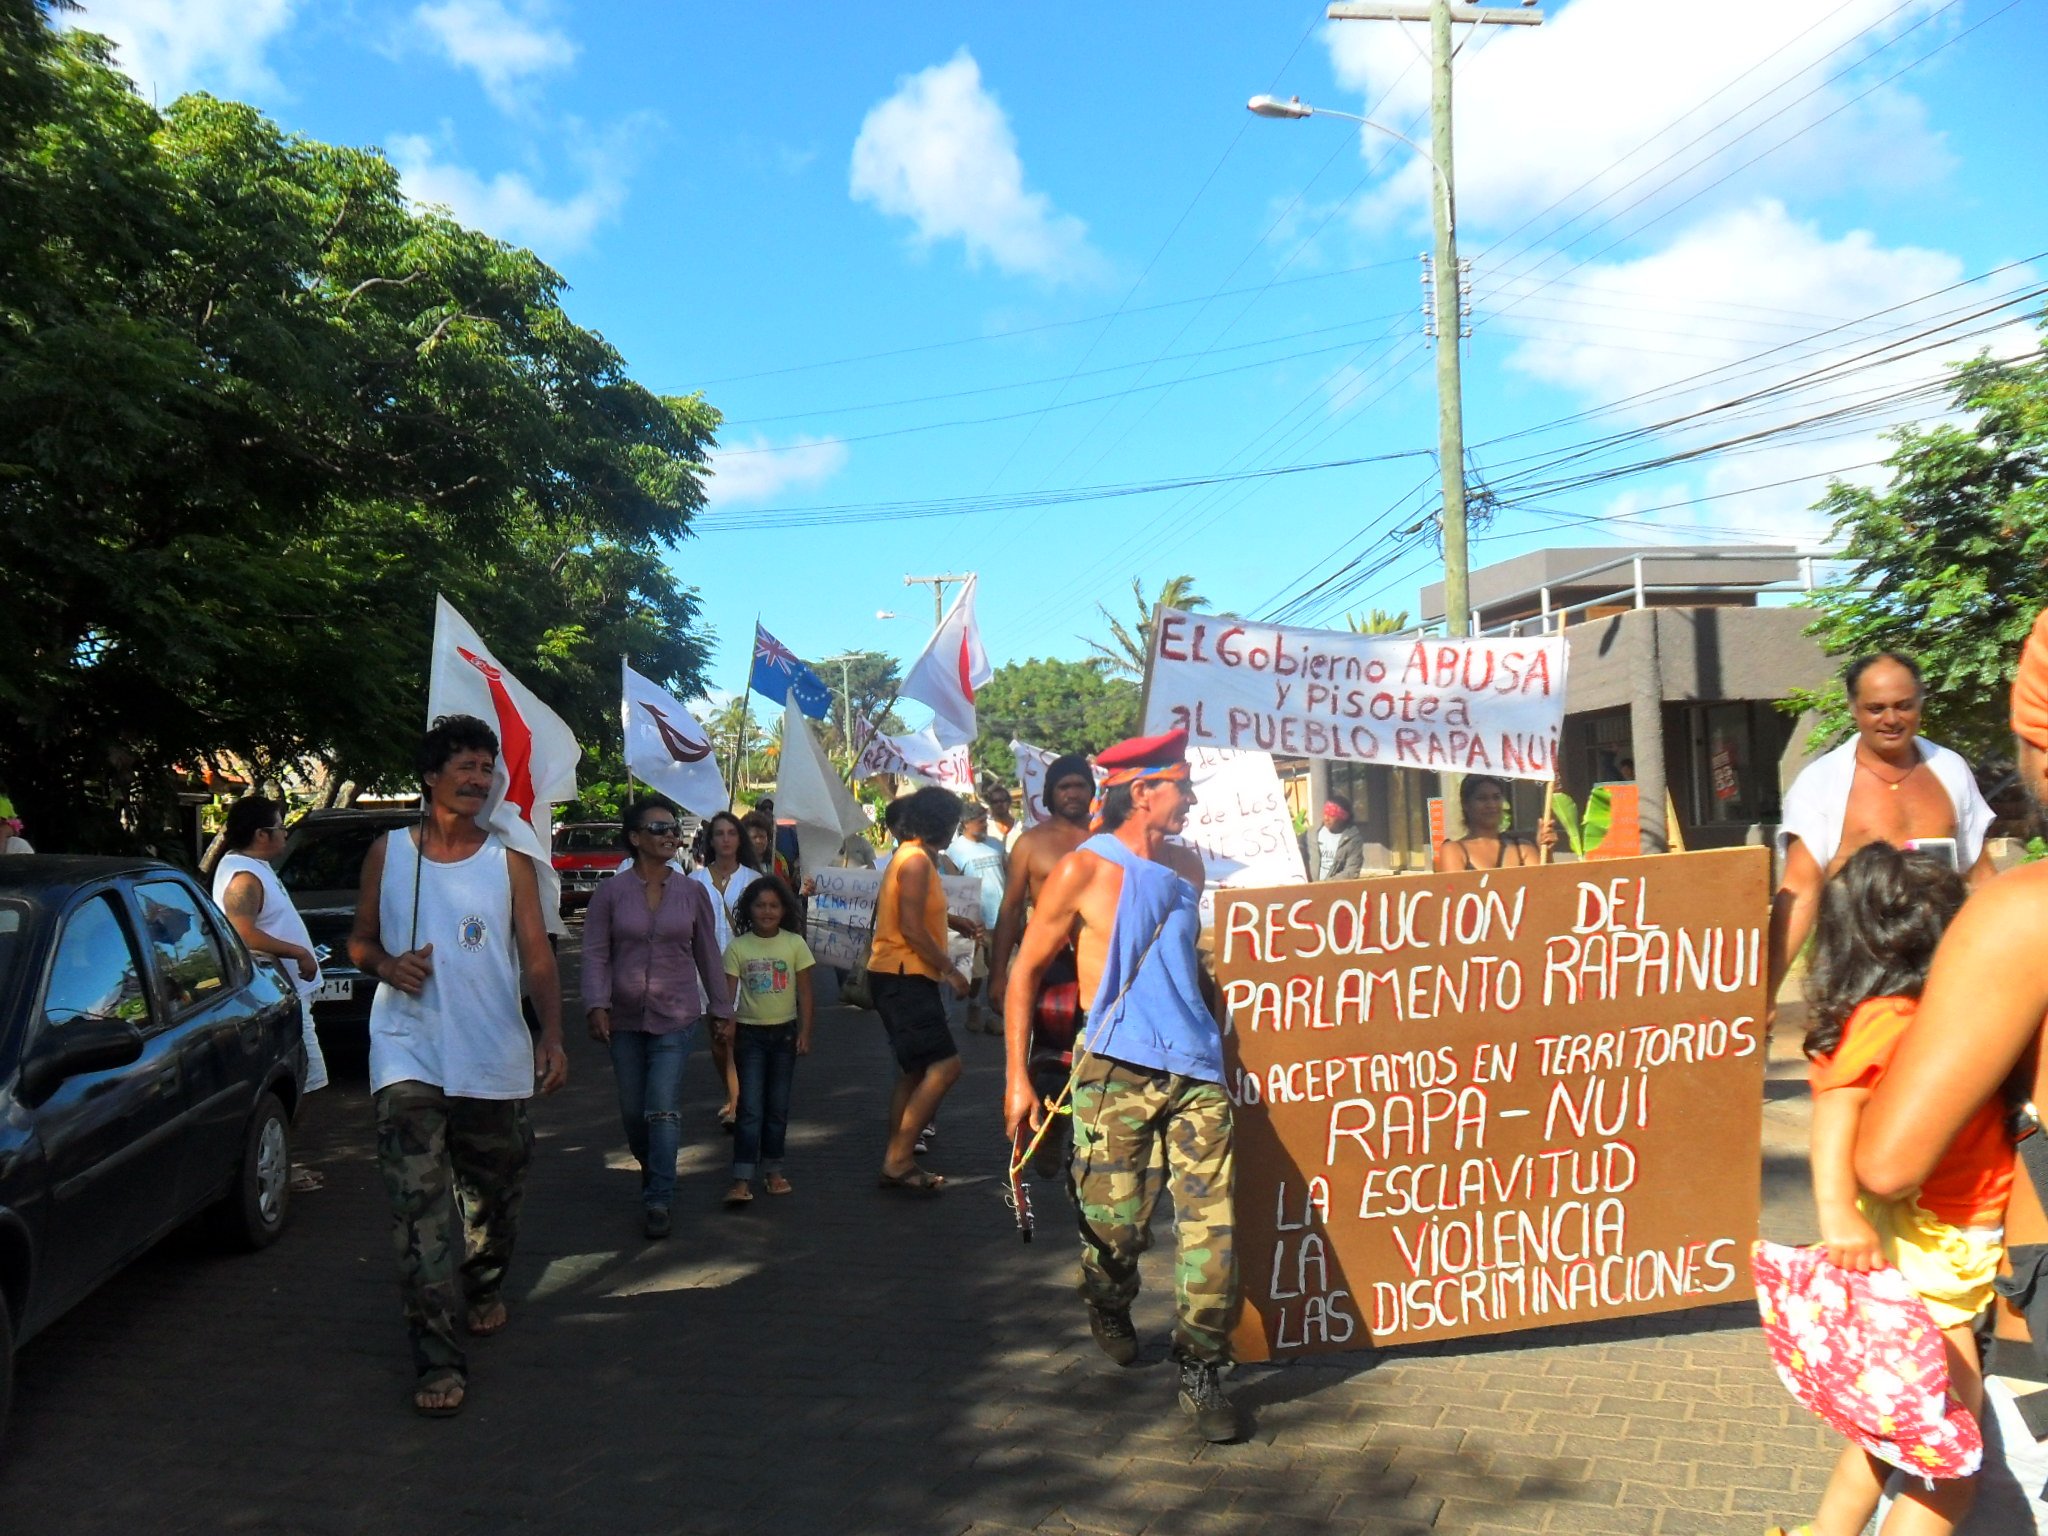 Marcha en Rapa Nui por la desmilitarización de la isla